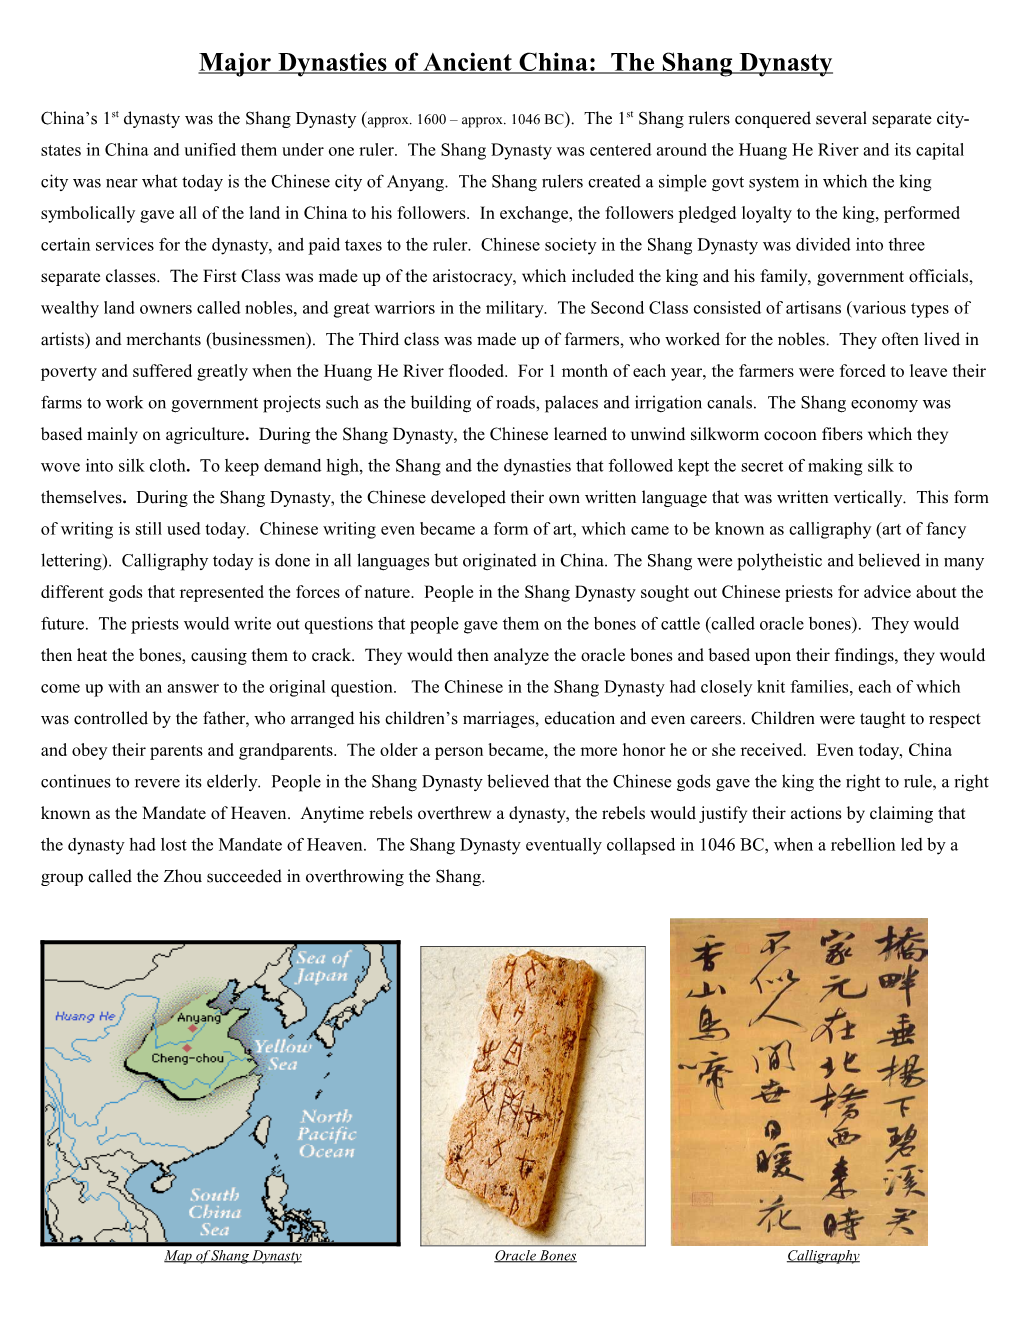 Ancient China: the Shang Dynasty